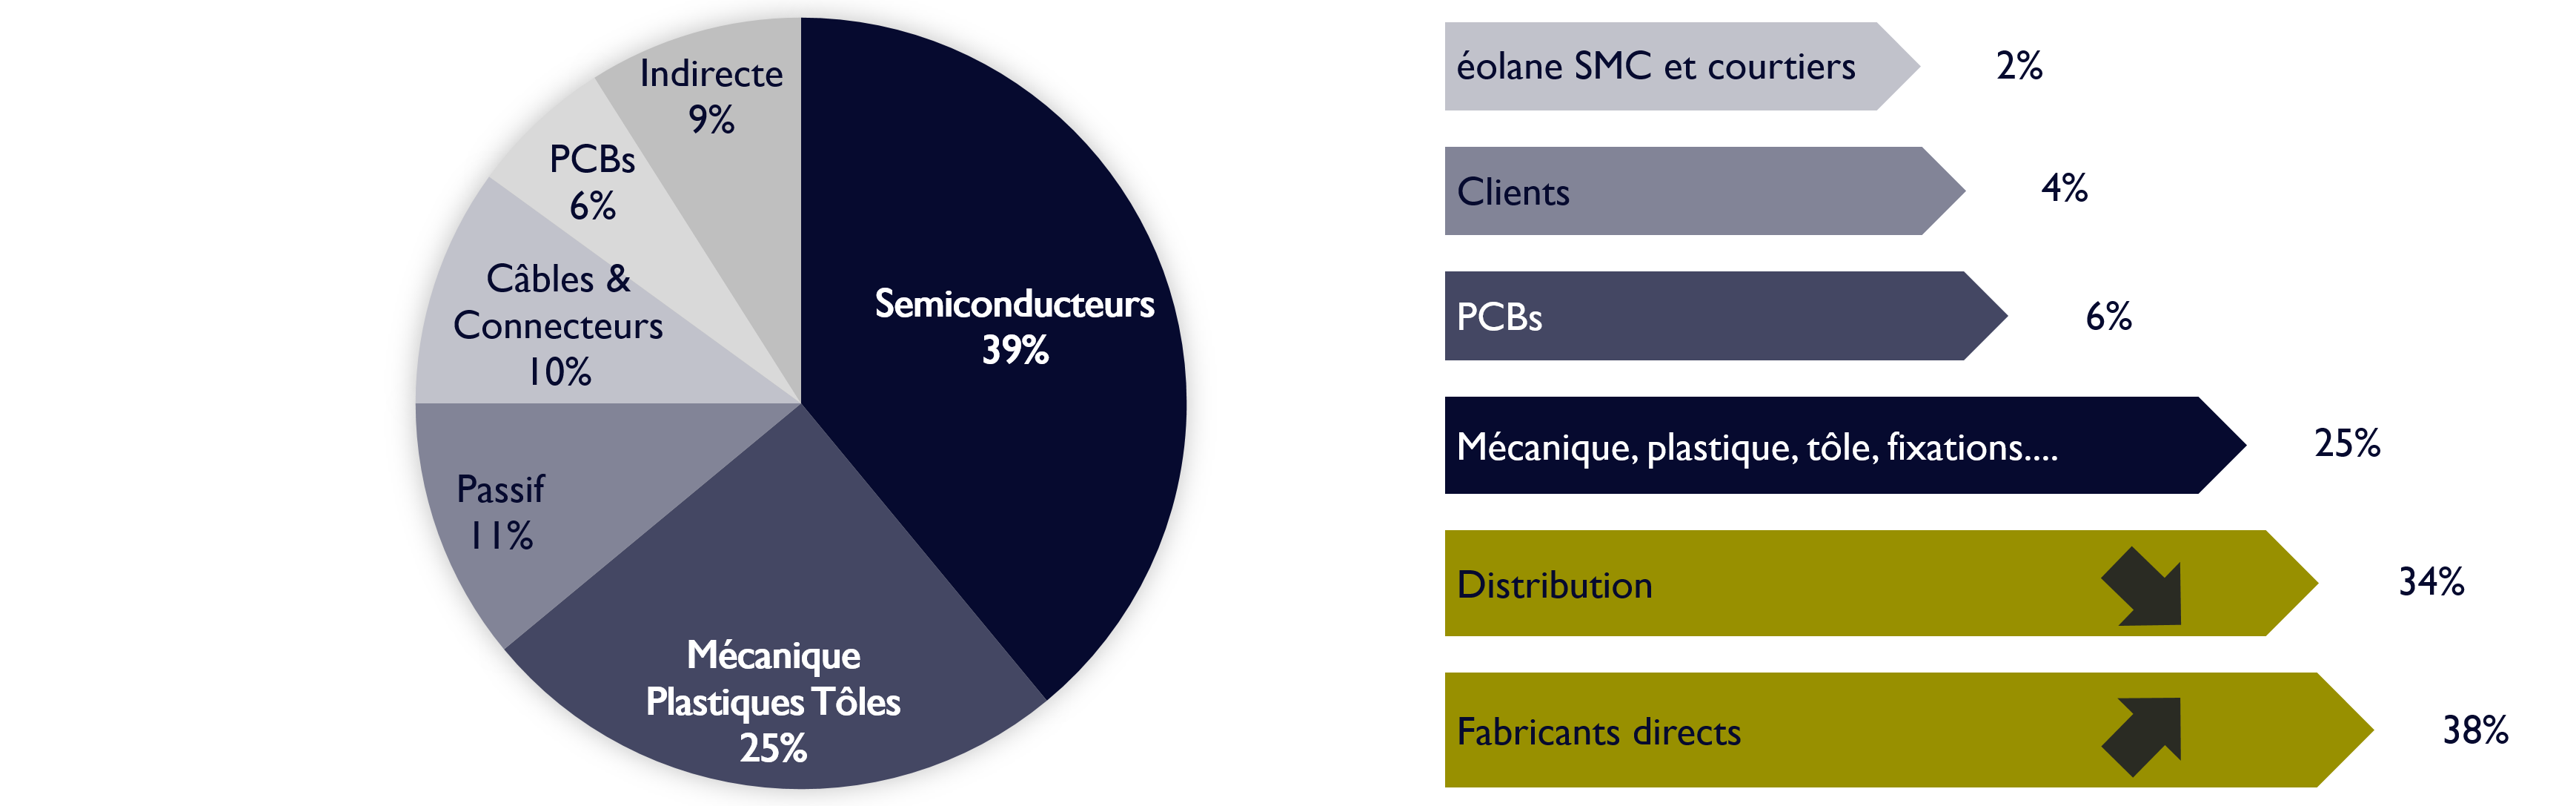 Diagramme de répartition des achats (39% semiconducteurs, 25% mécanique, plastiques et tôles, 11% passif, 10% câbles et connecteurs, 6% PCBs, 9% indirecte) 